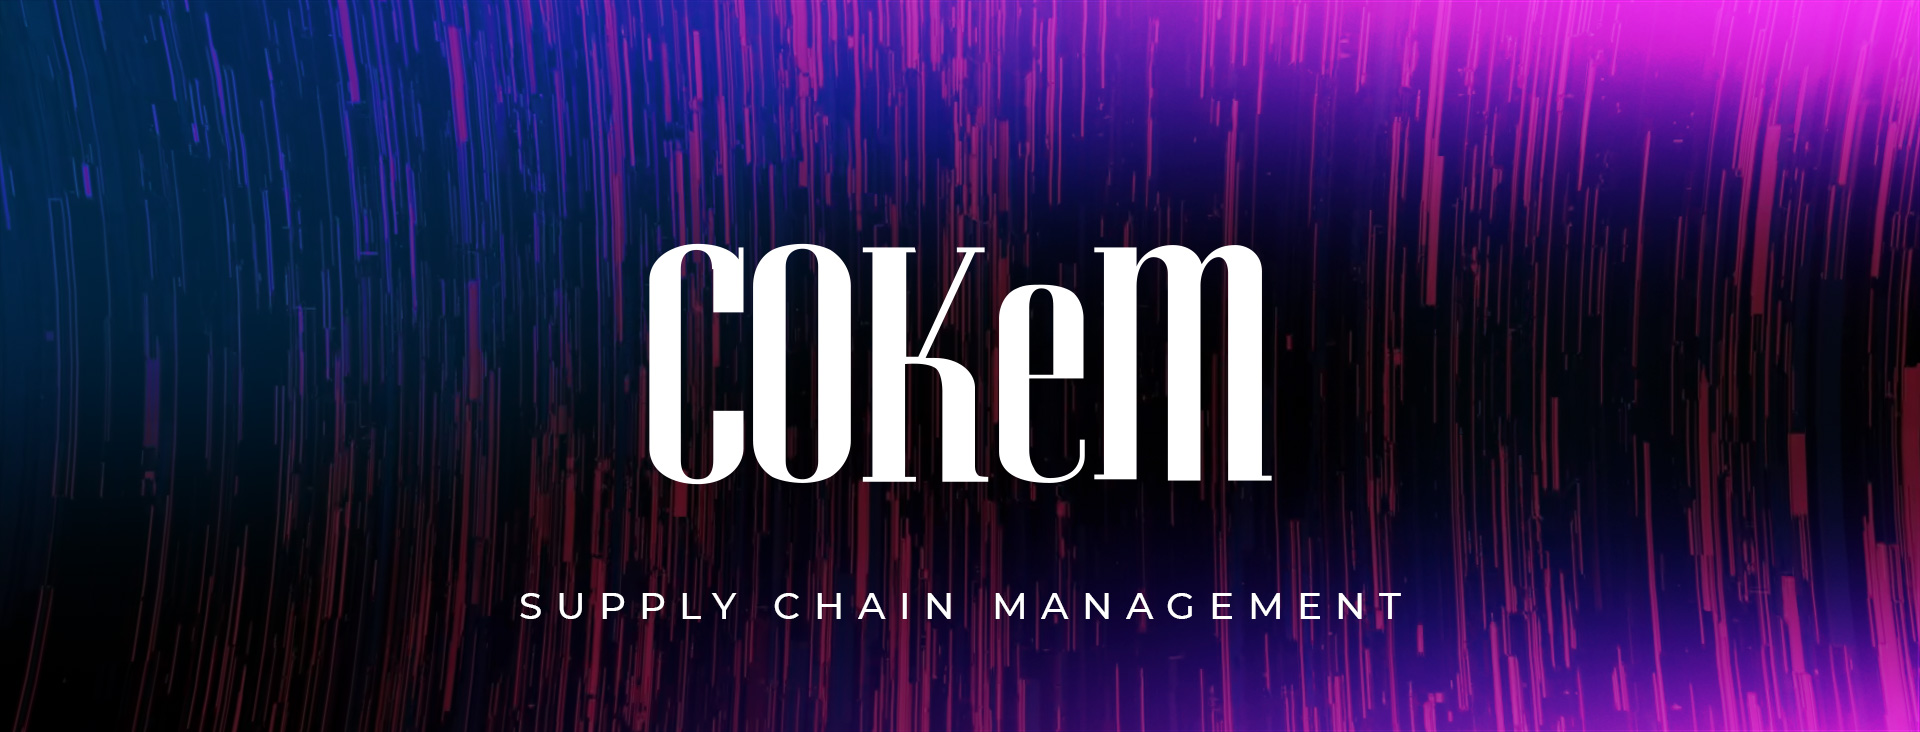 Supply Chain Management Banner